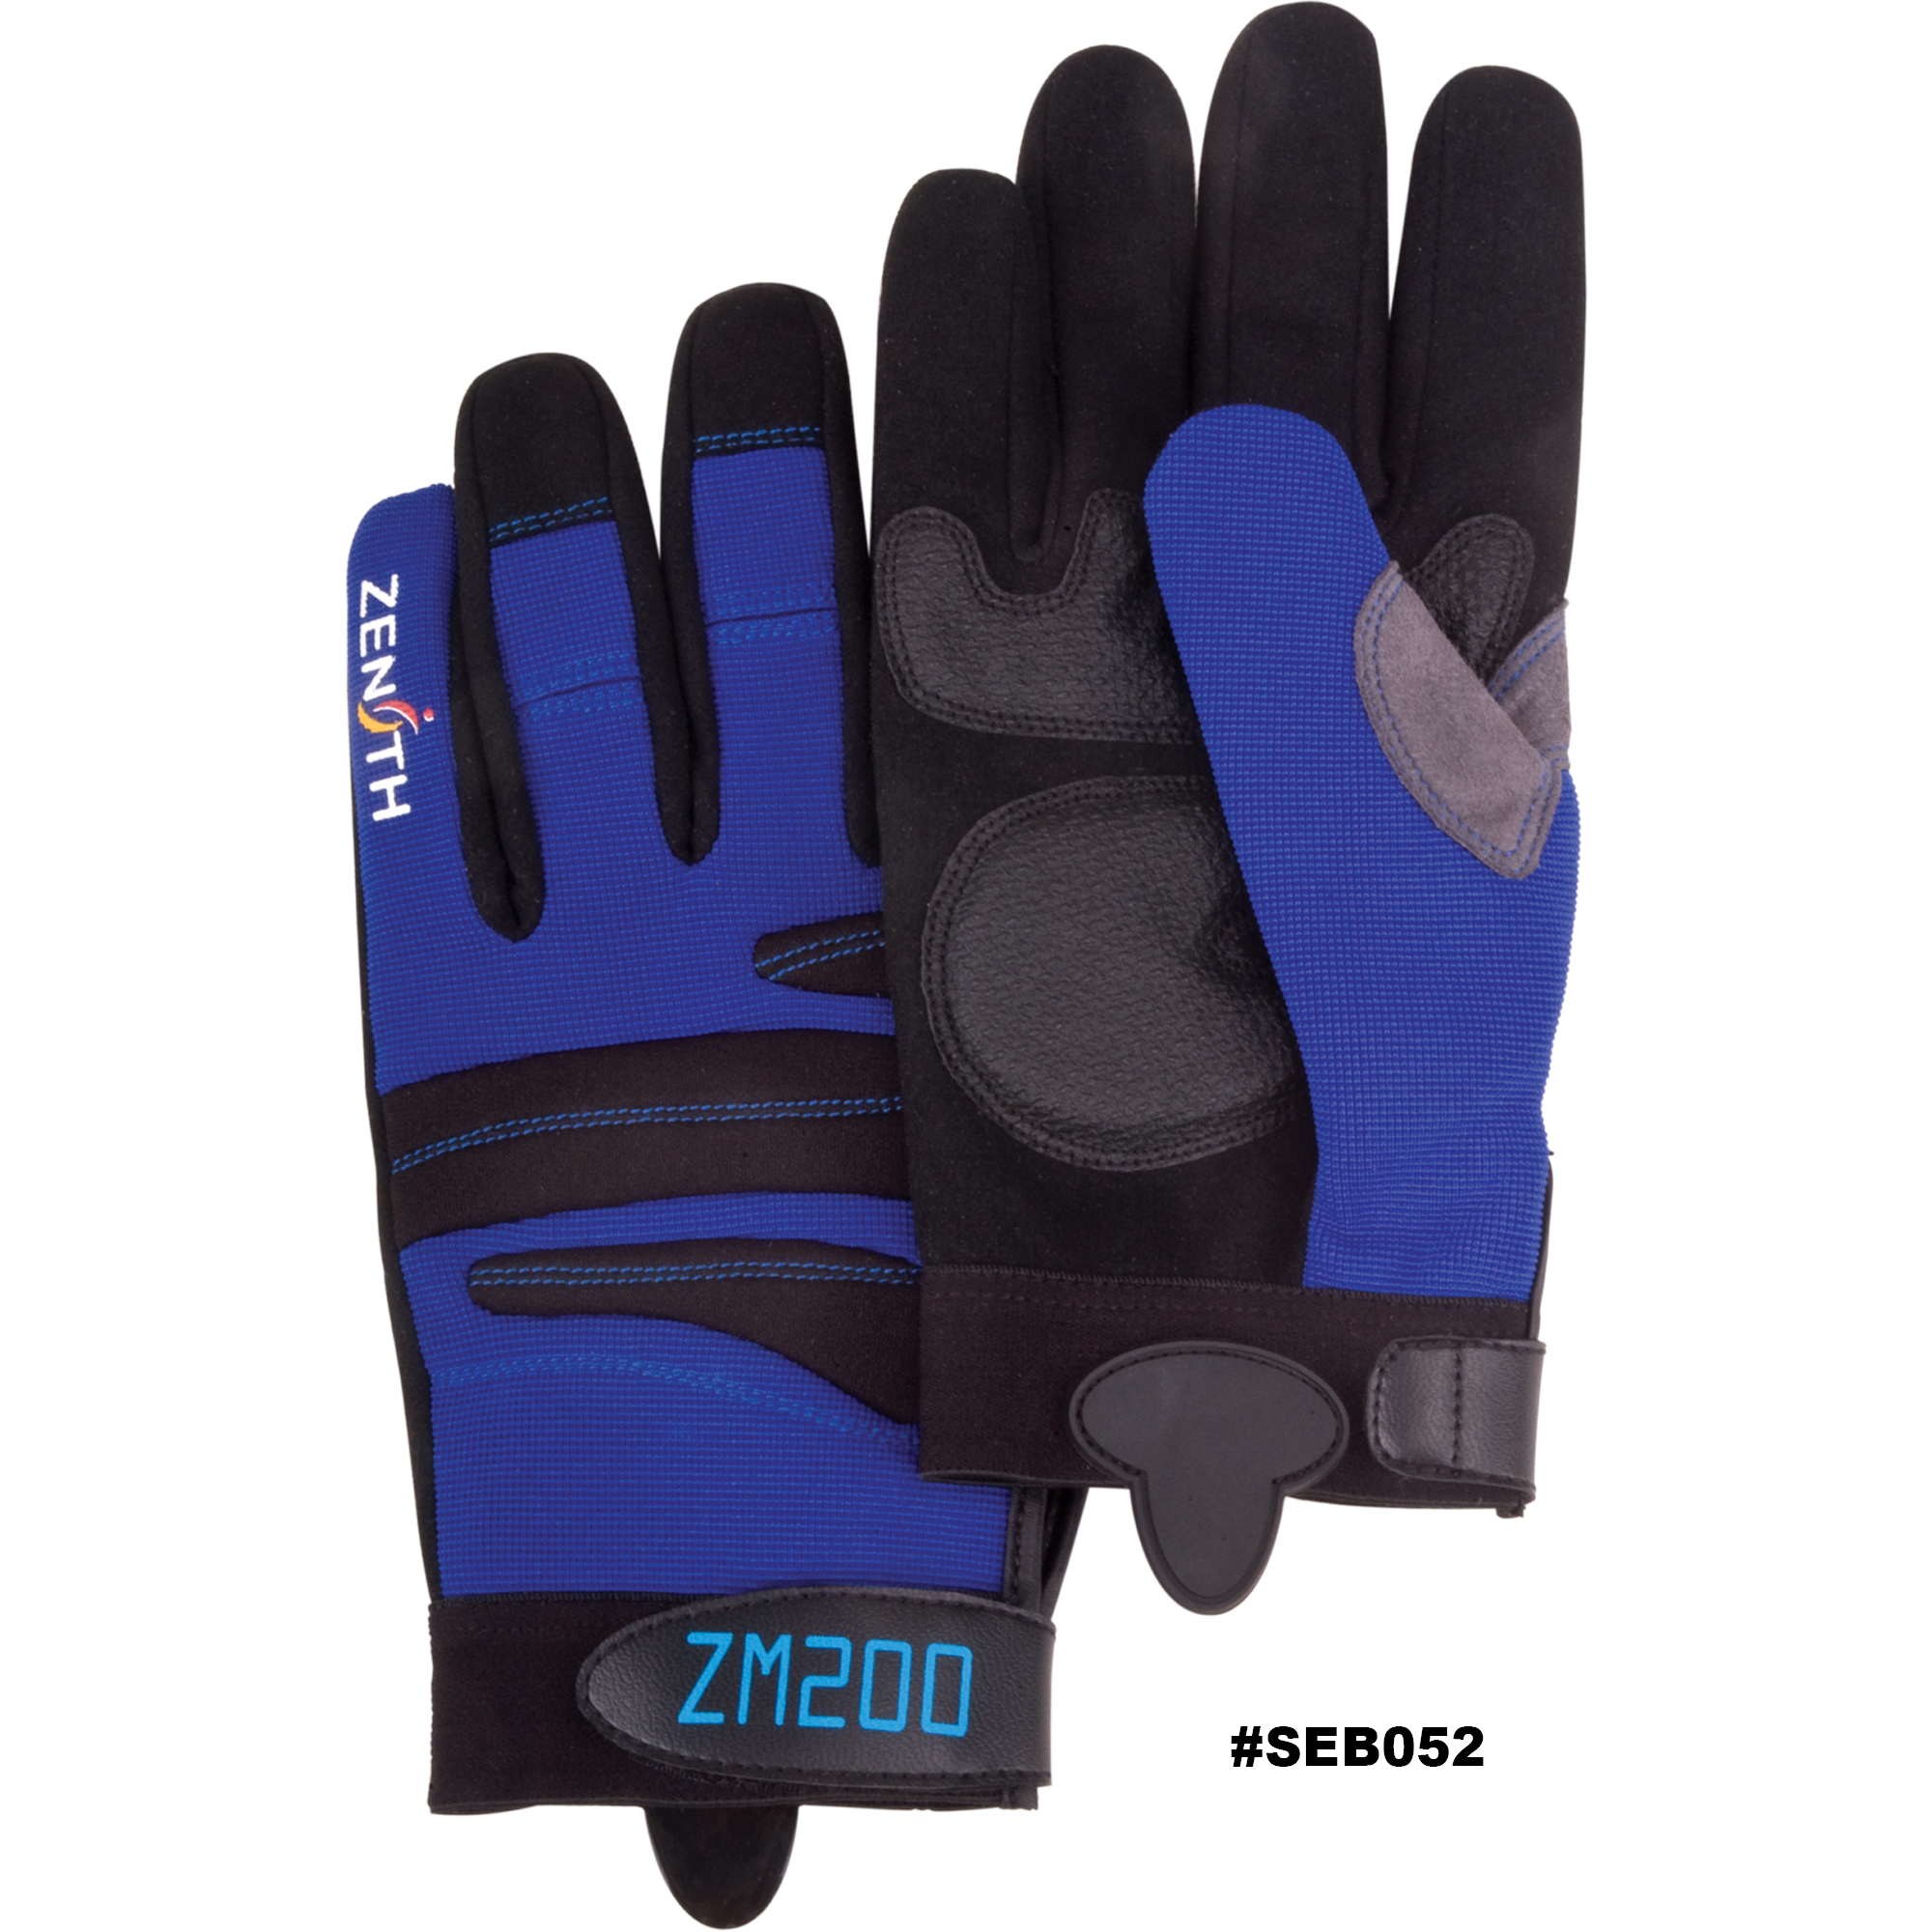 Zenith ZM200 Mechanic Gloves, Synthetic Palm, Size Large Model: SEB052